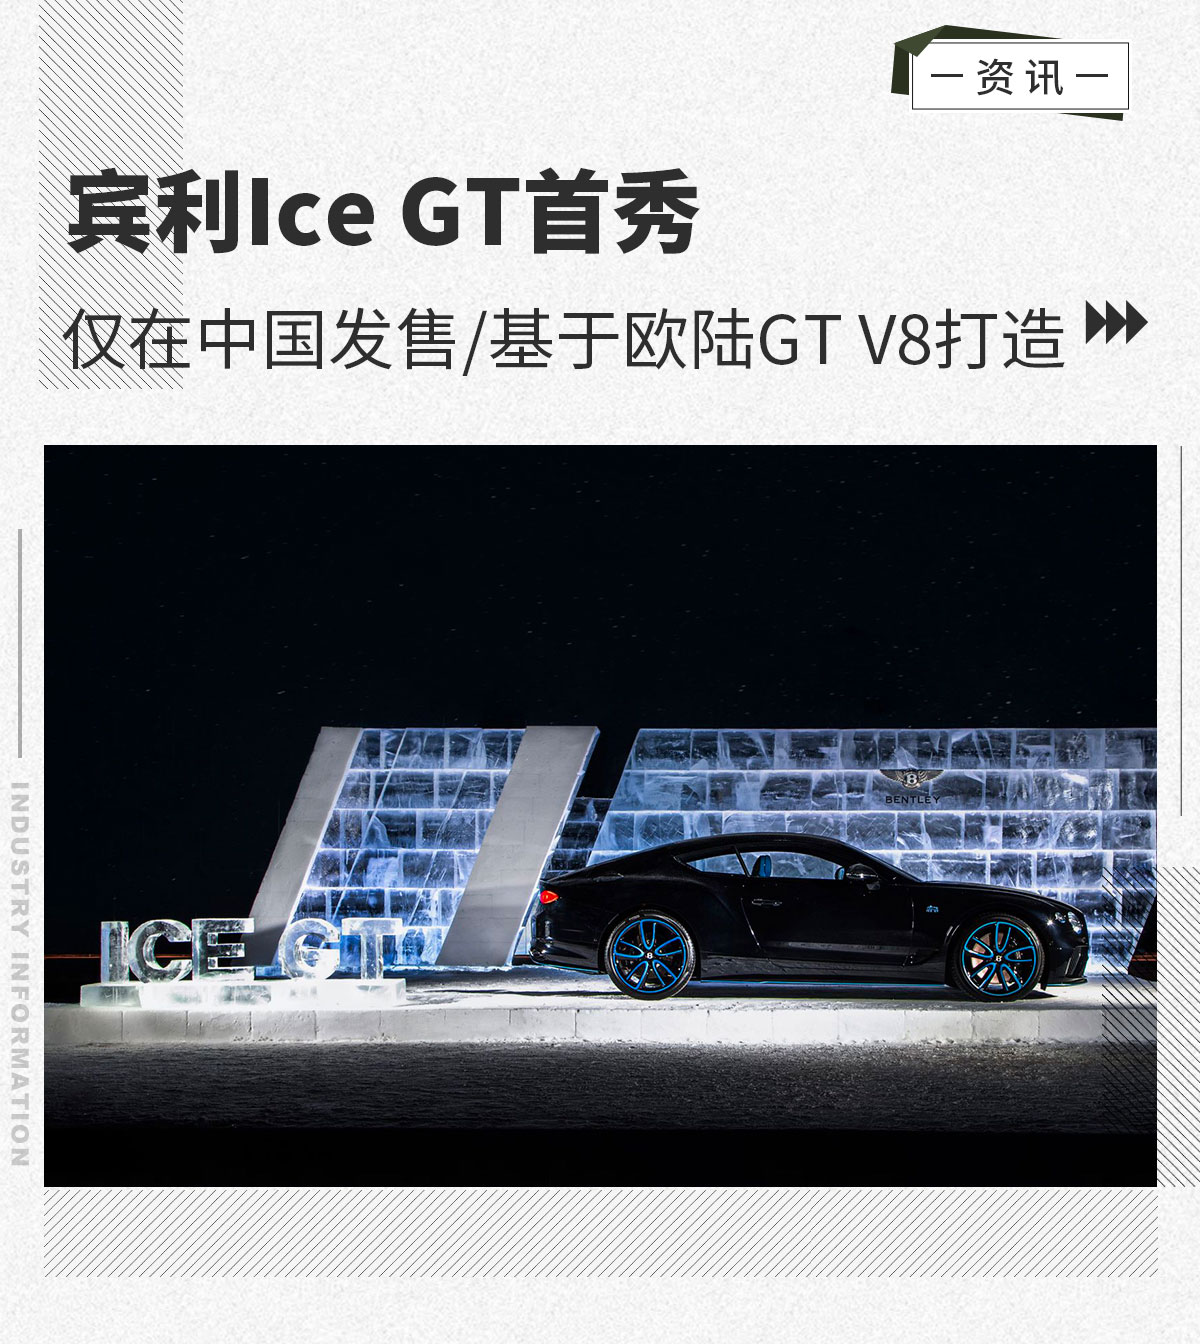 宾利Ice GT首秀 仅在中国发售/基于欧陆GT打造